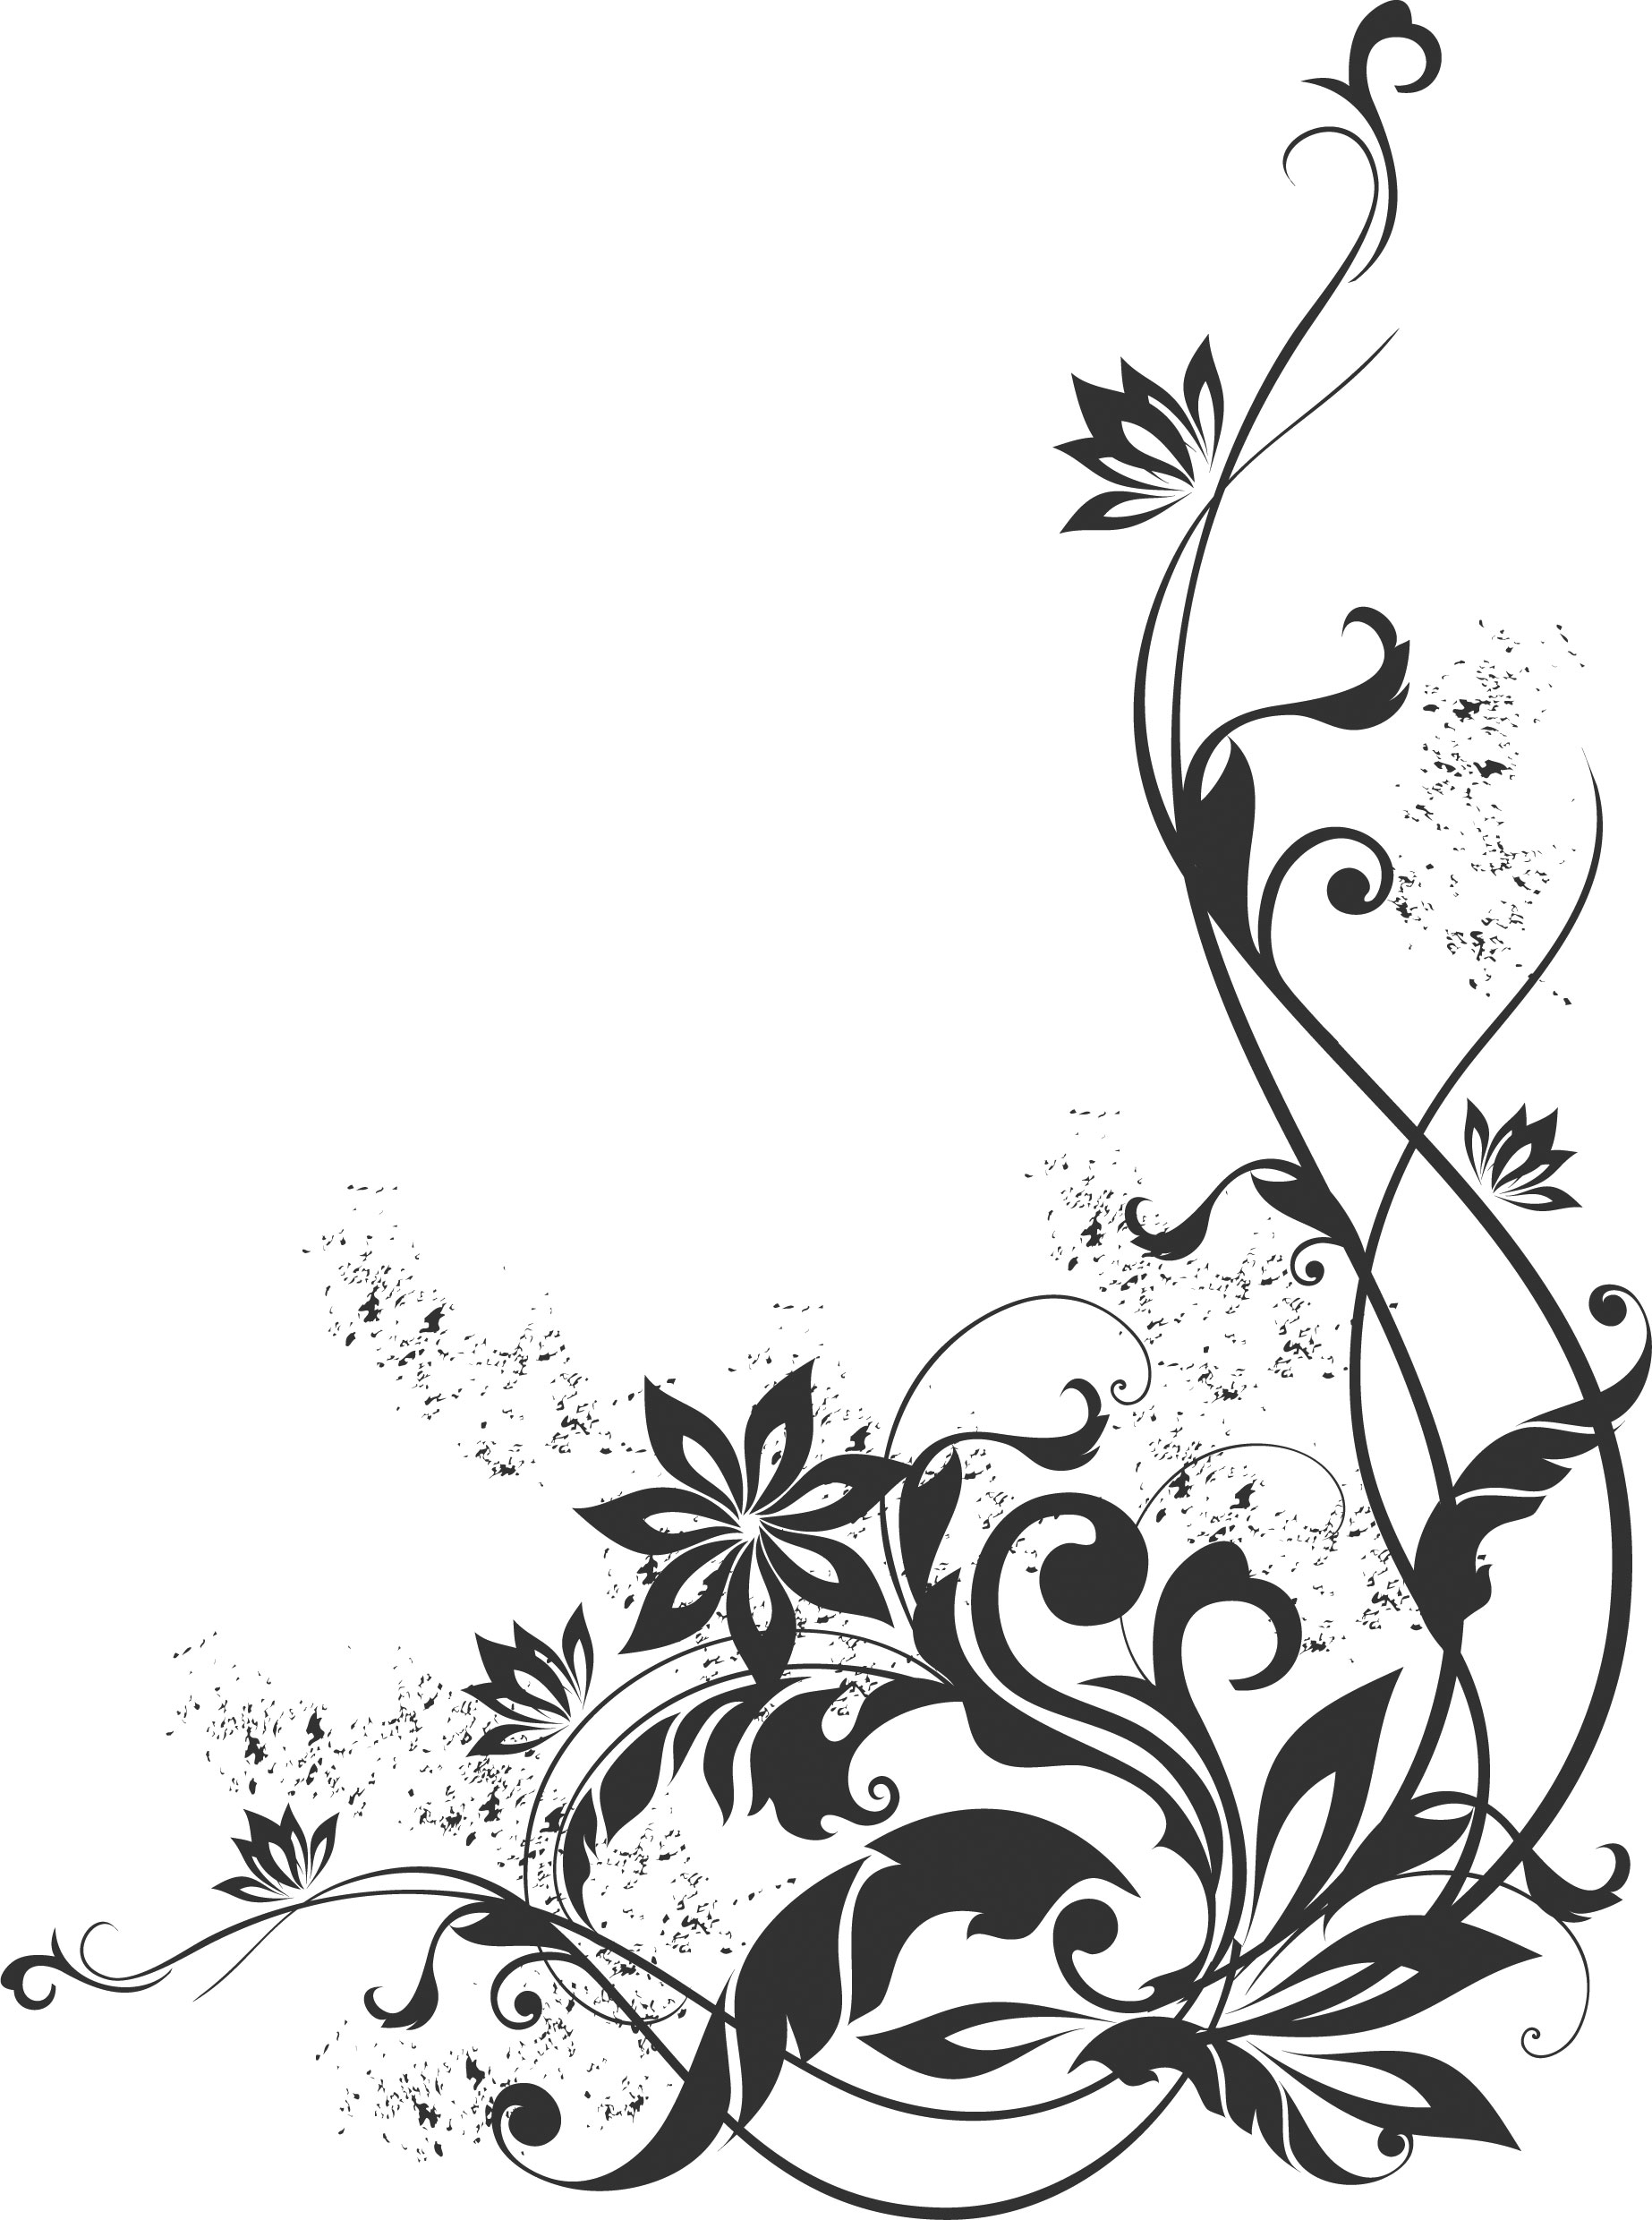 無料イラスト画像 最高かつ最も包括的なかっこいい 花 イラスト 白黒